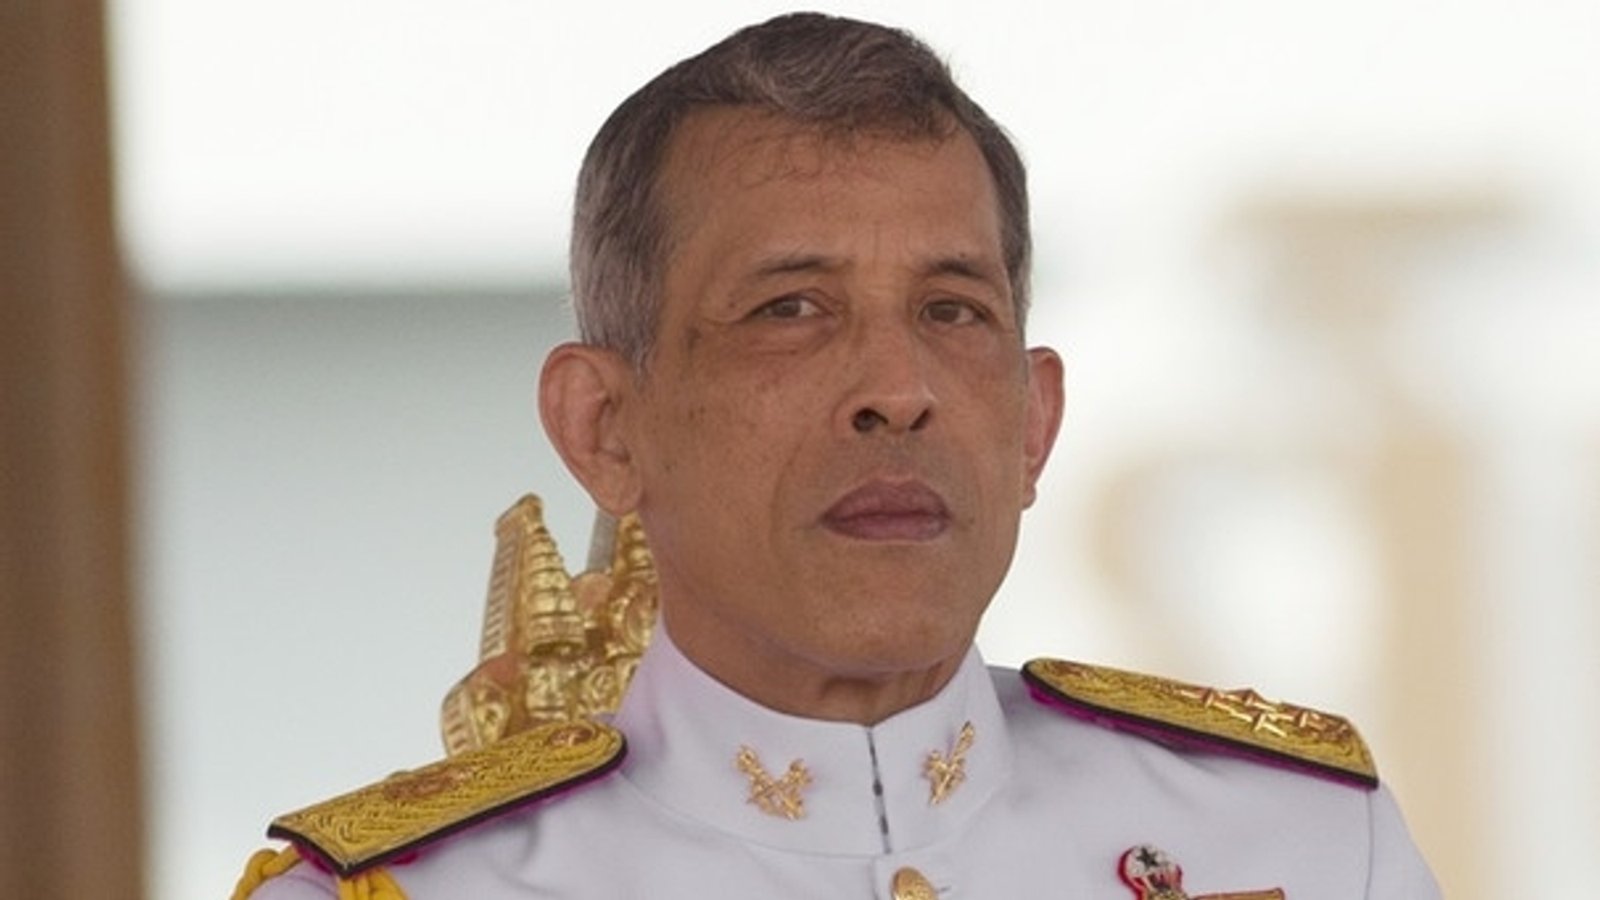 Softair-Schüsse auf thailändischen König ohne Folgen